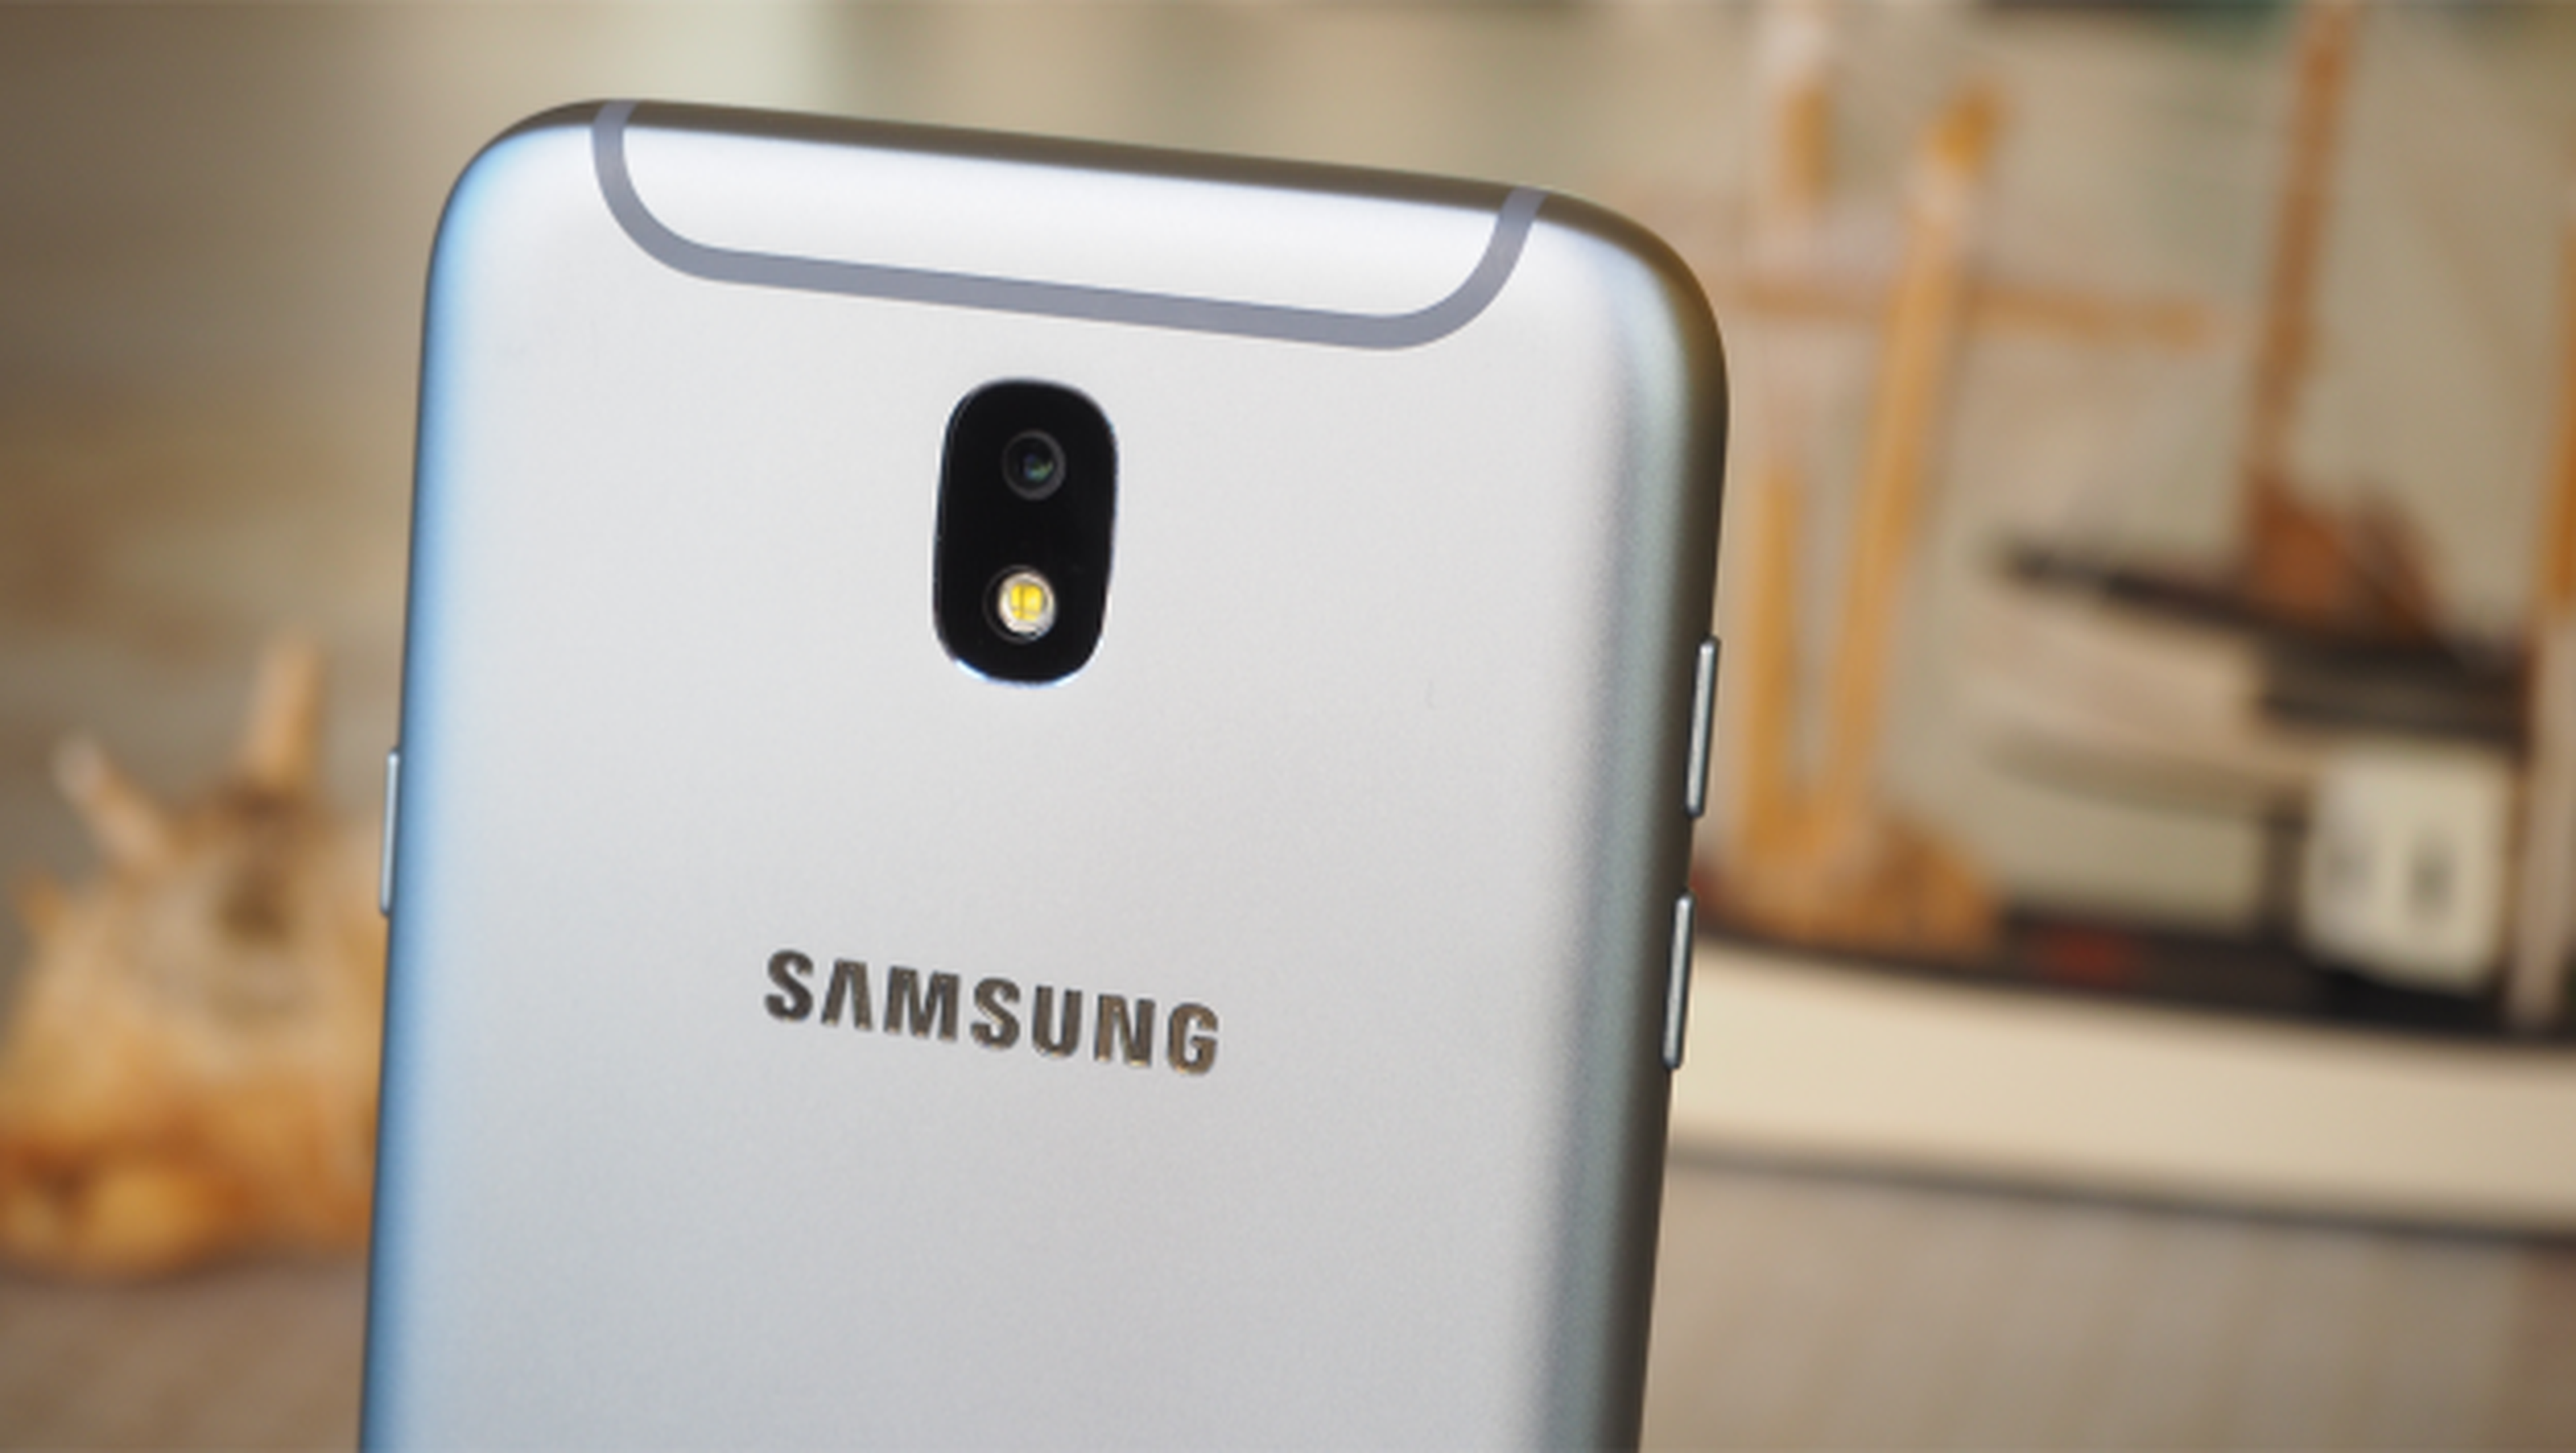 Trucos para la cámara del Samsung J7: guía para hacer buenas fotos